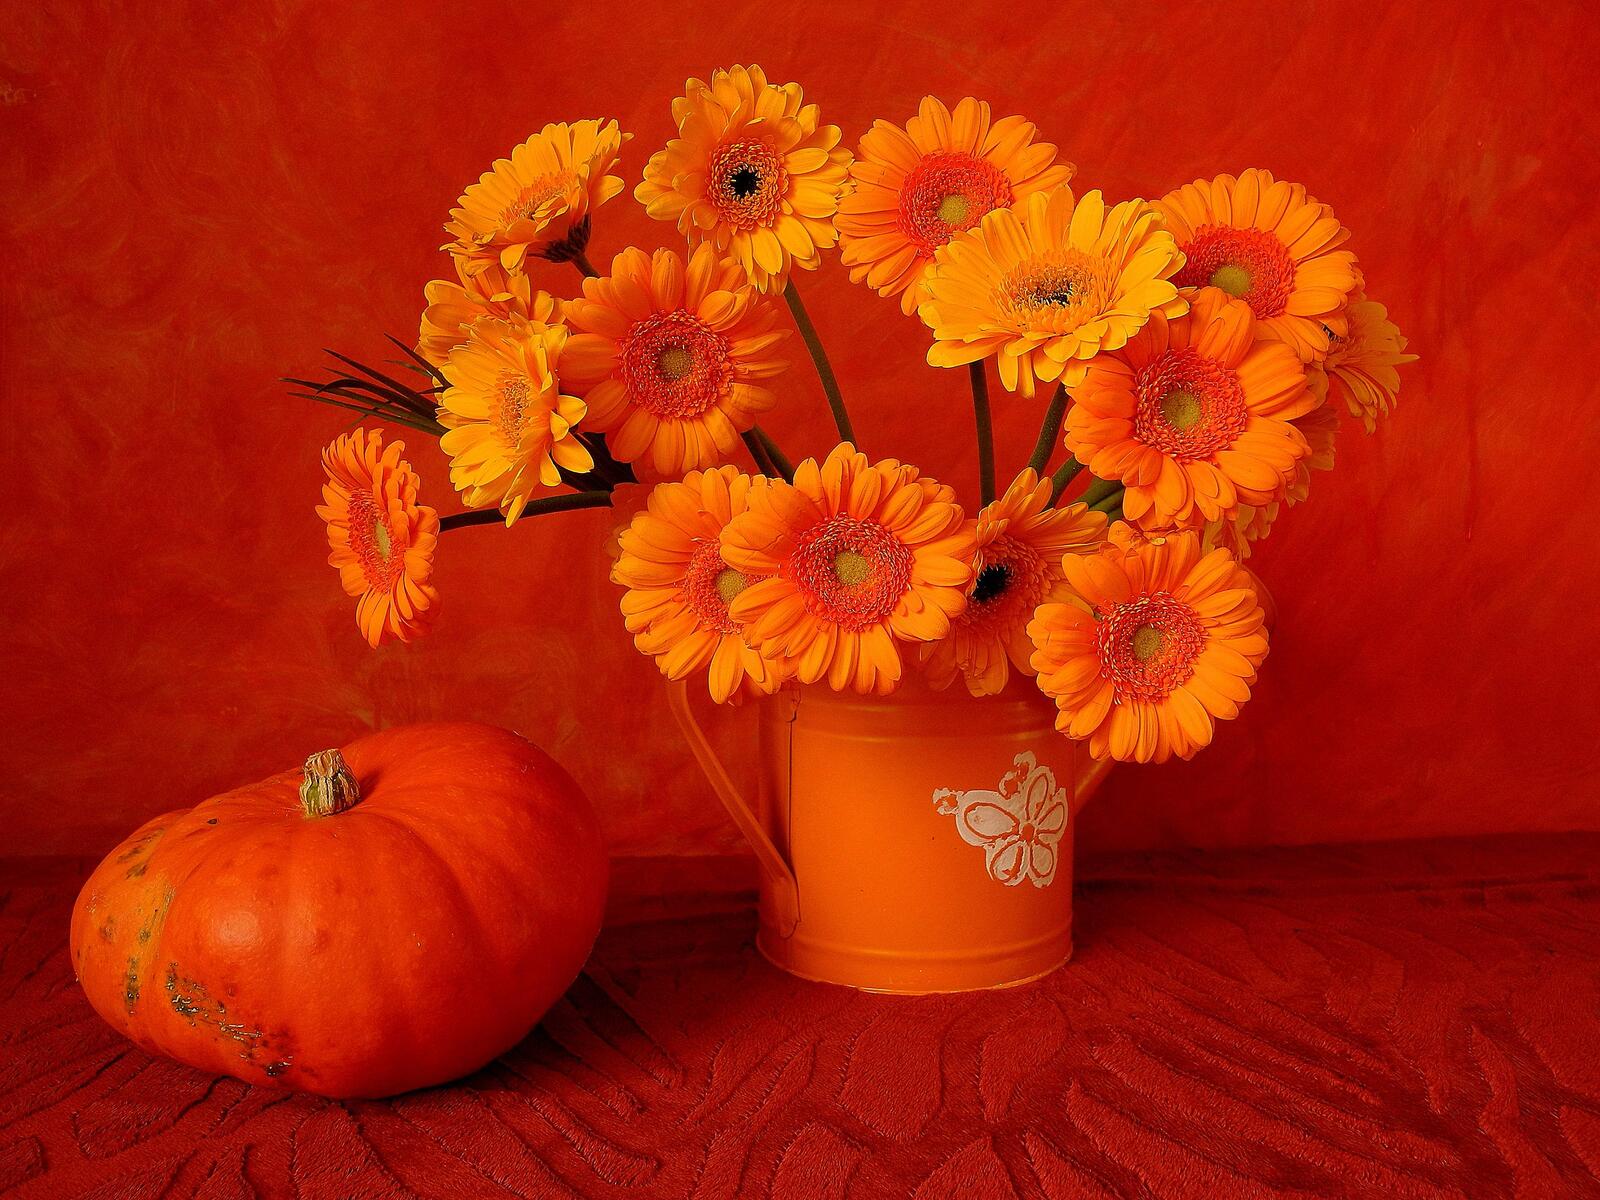 Wallpapers flowers pumpkin still life on the desktop